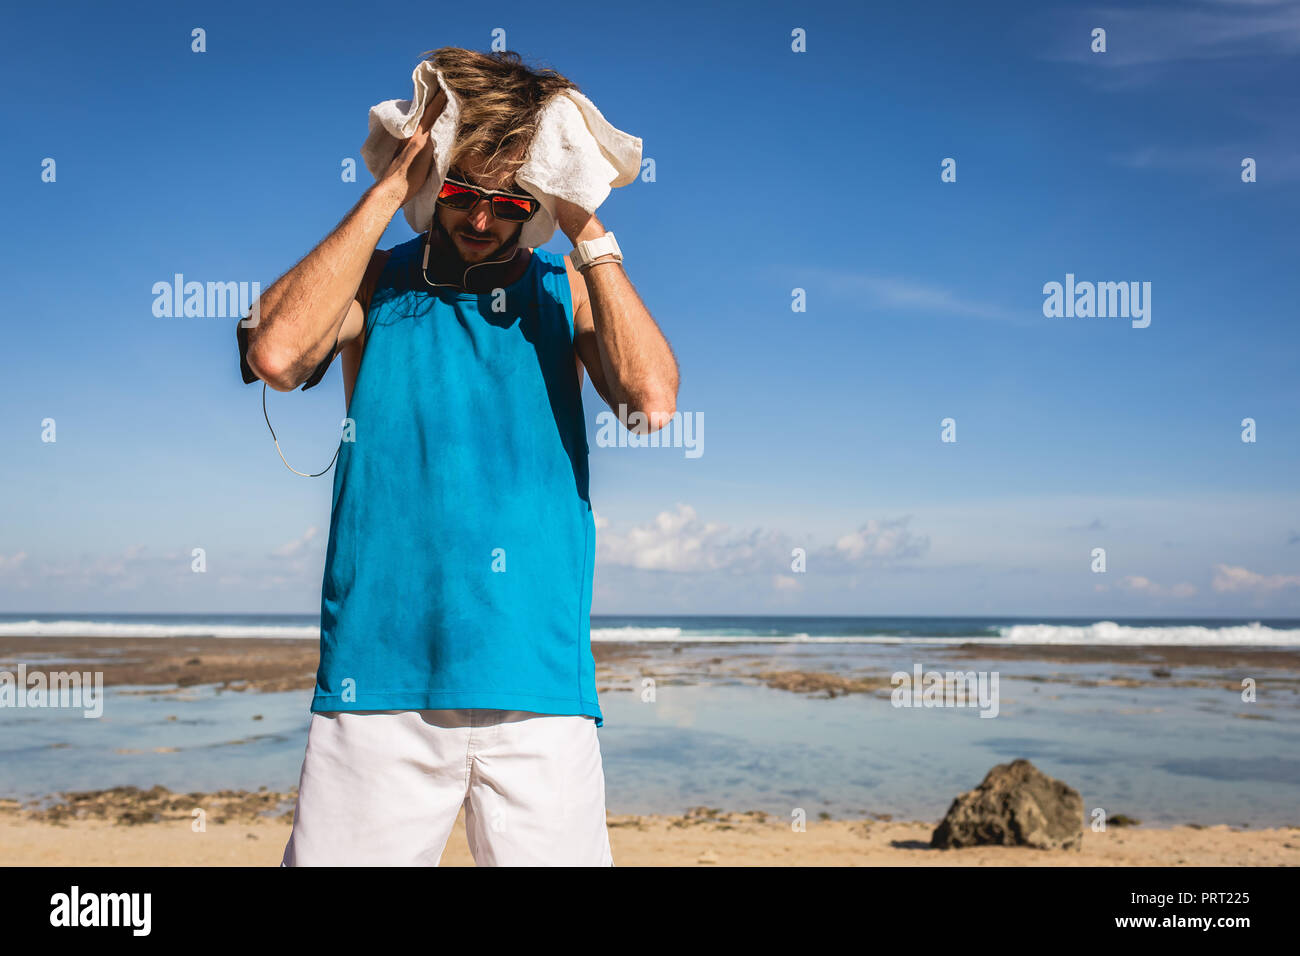 Sportif en sueur avec serviette debout en mer Banque D'Images